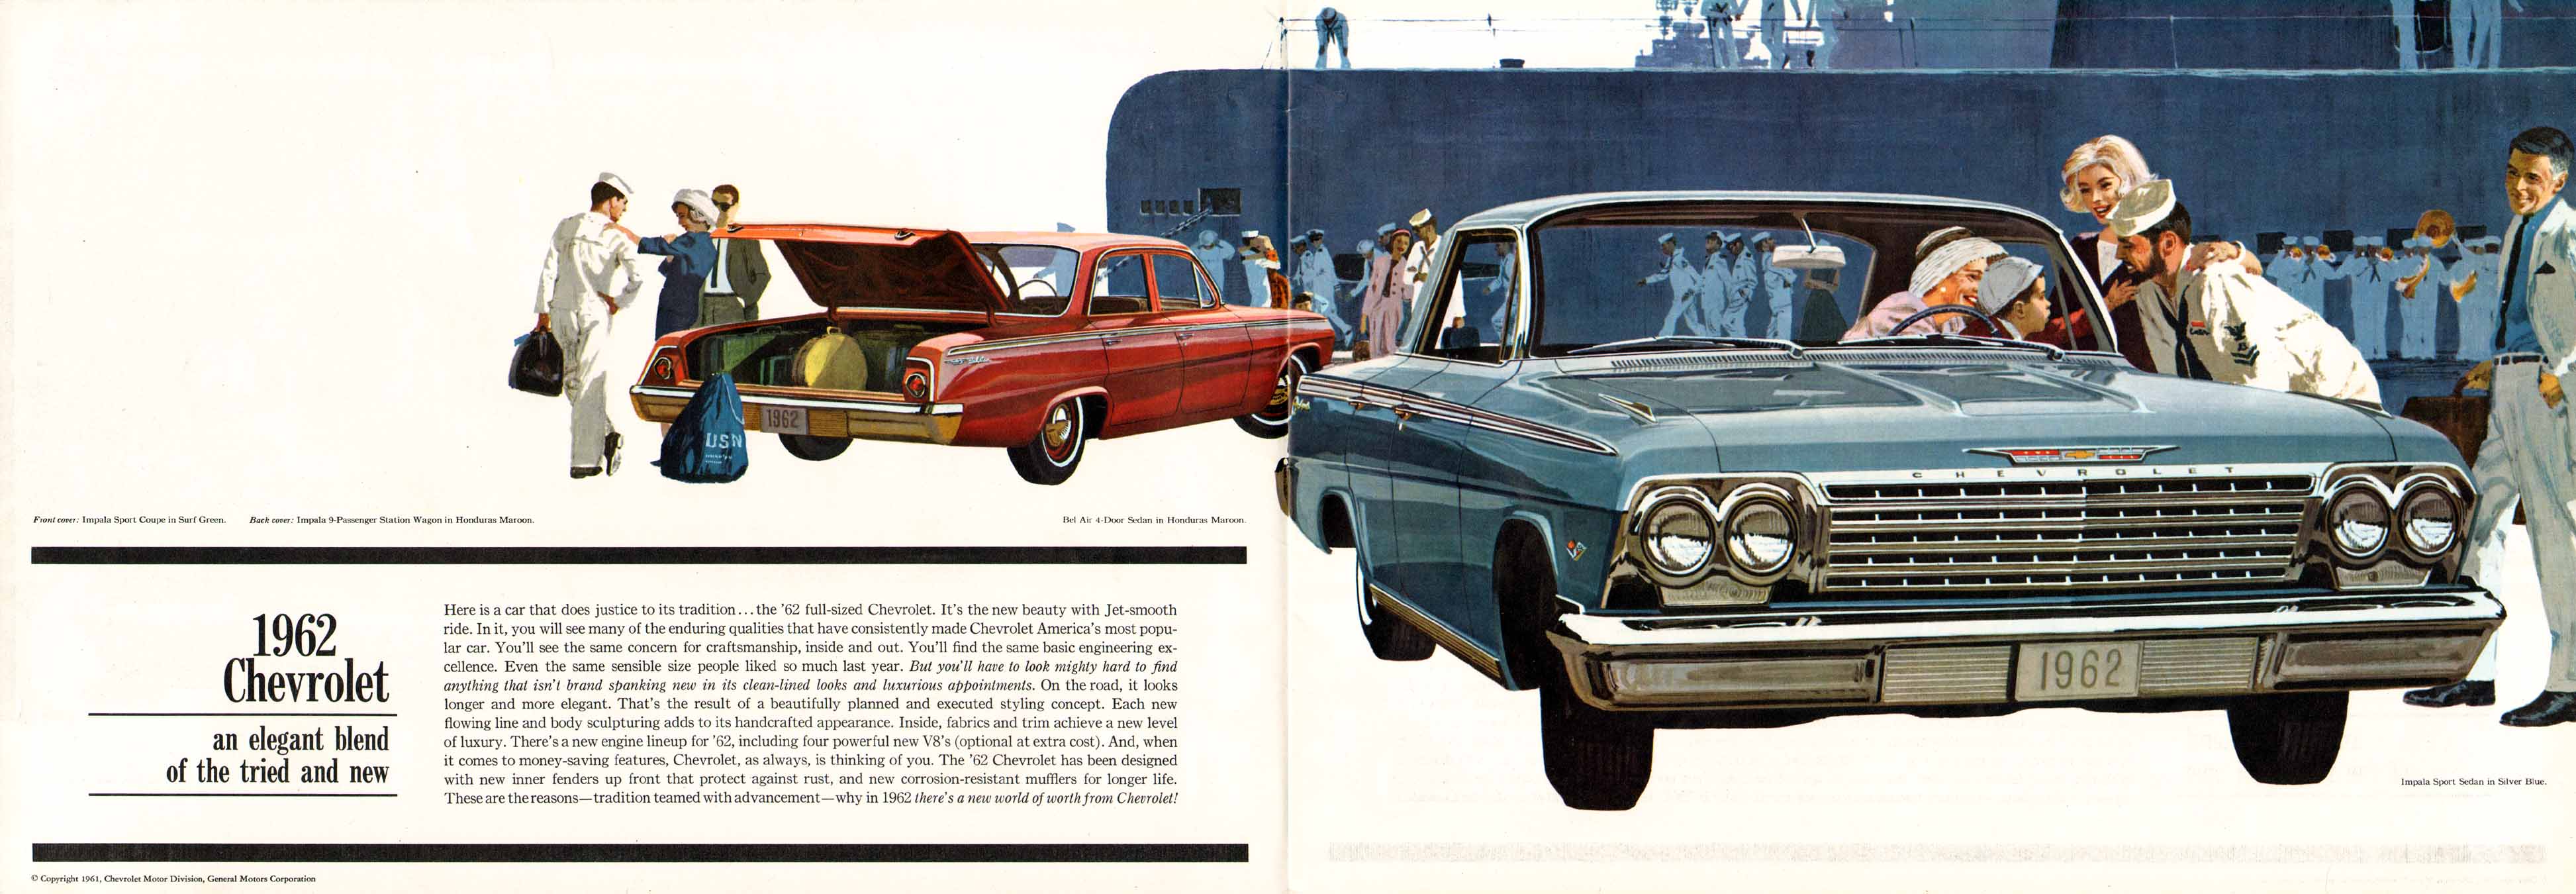 1962_Chevrolet_Full_Size-02-03